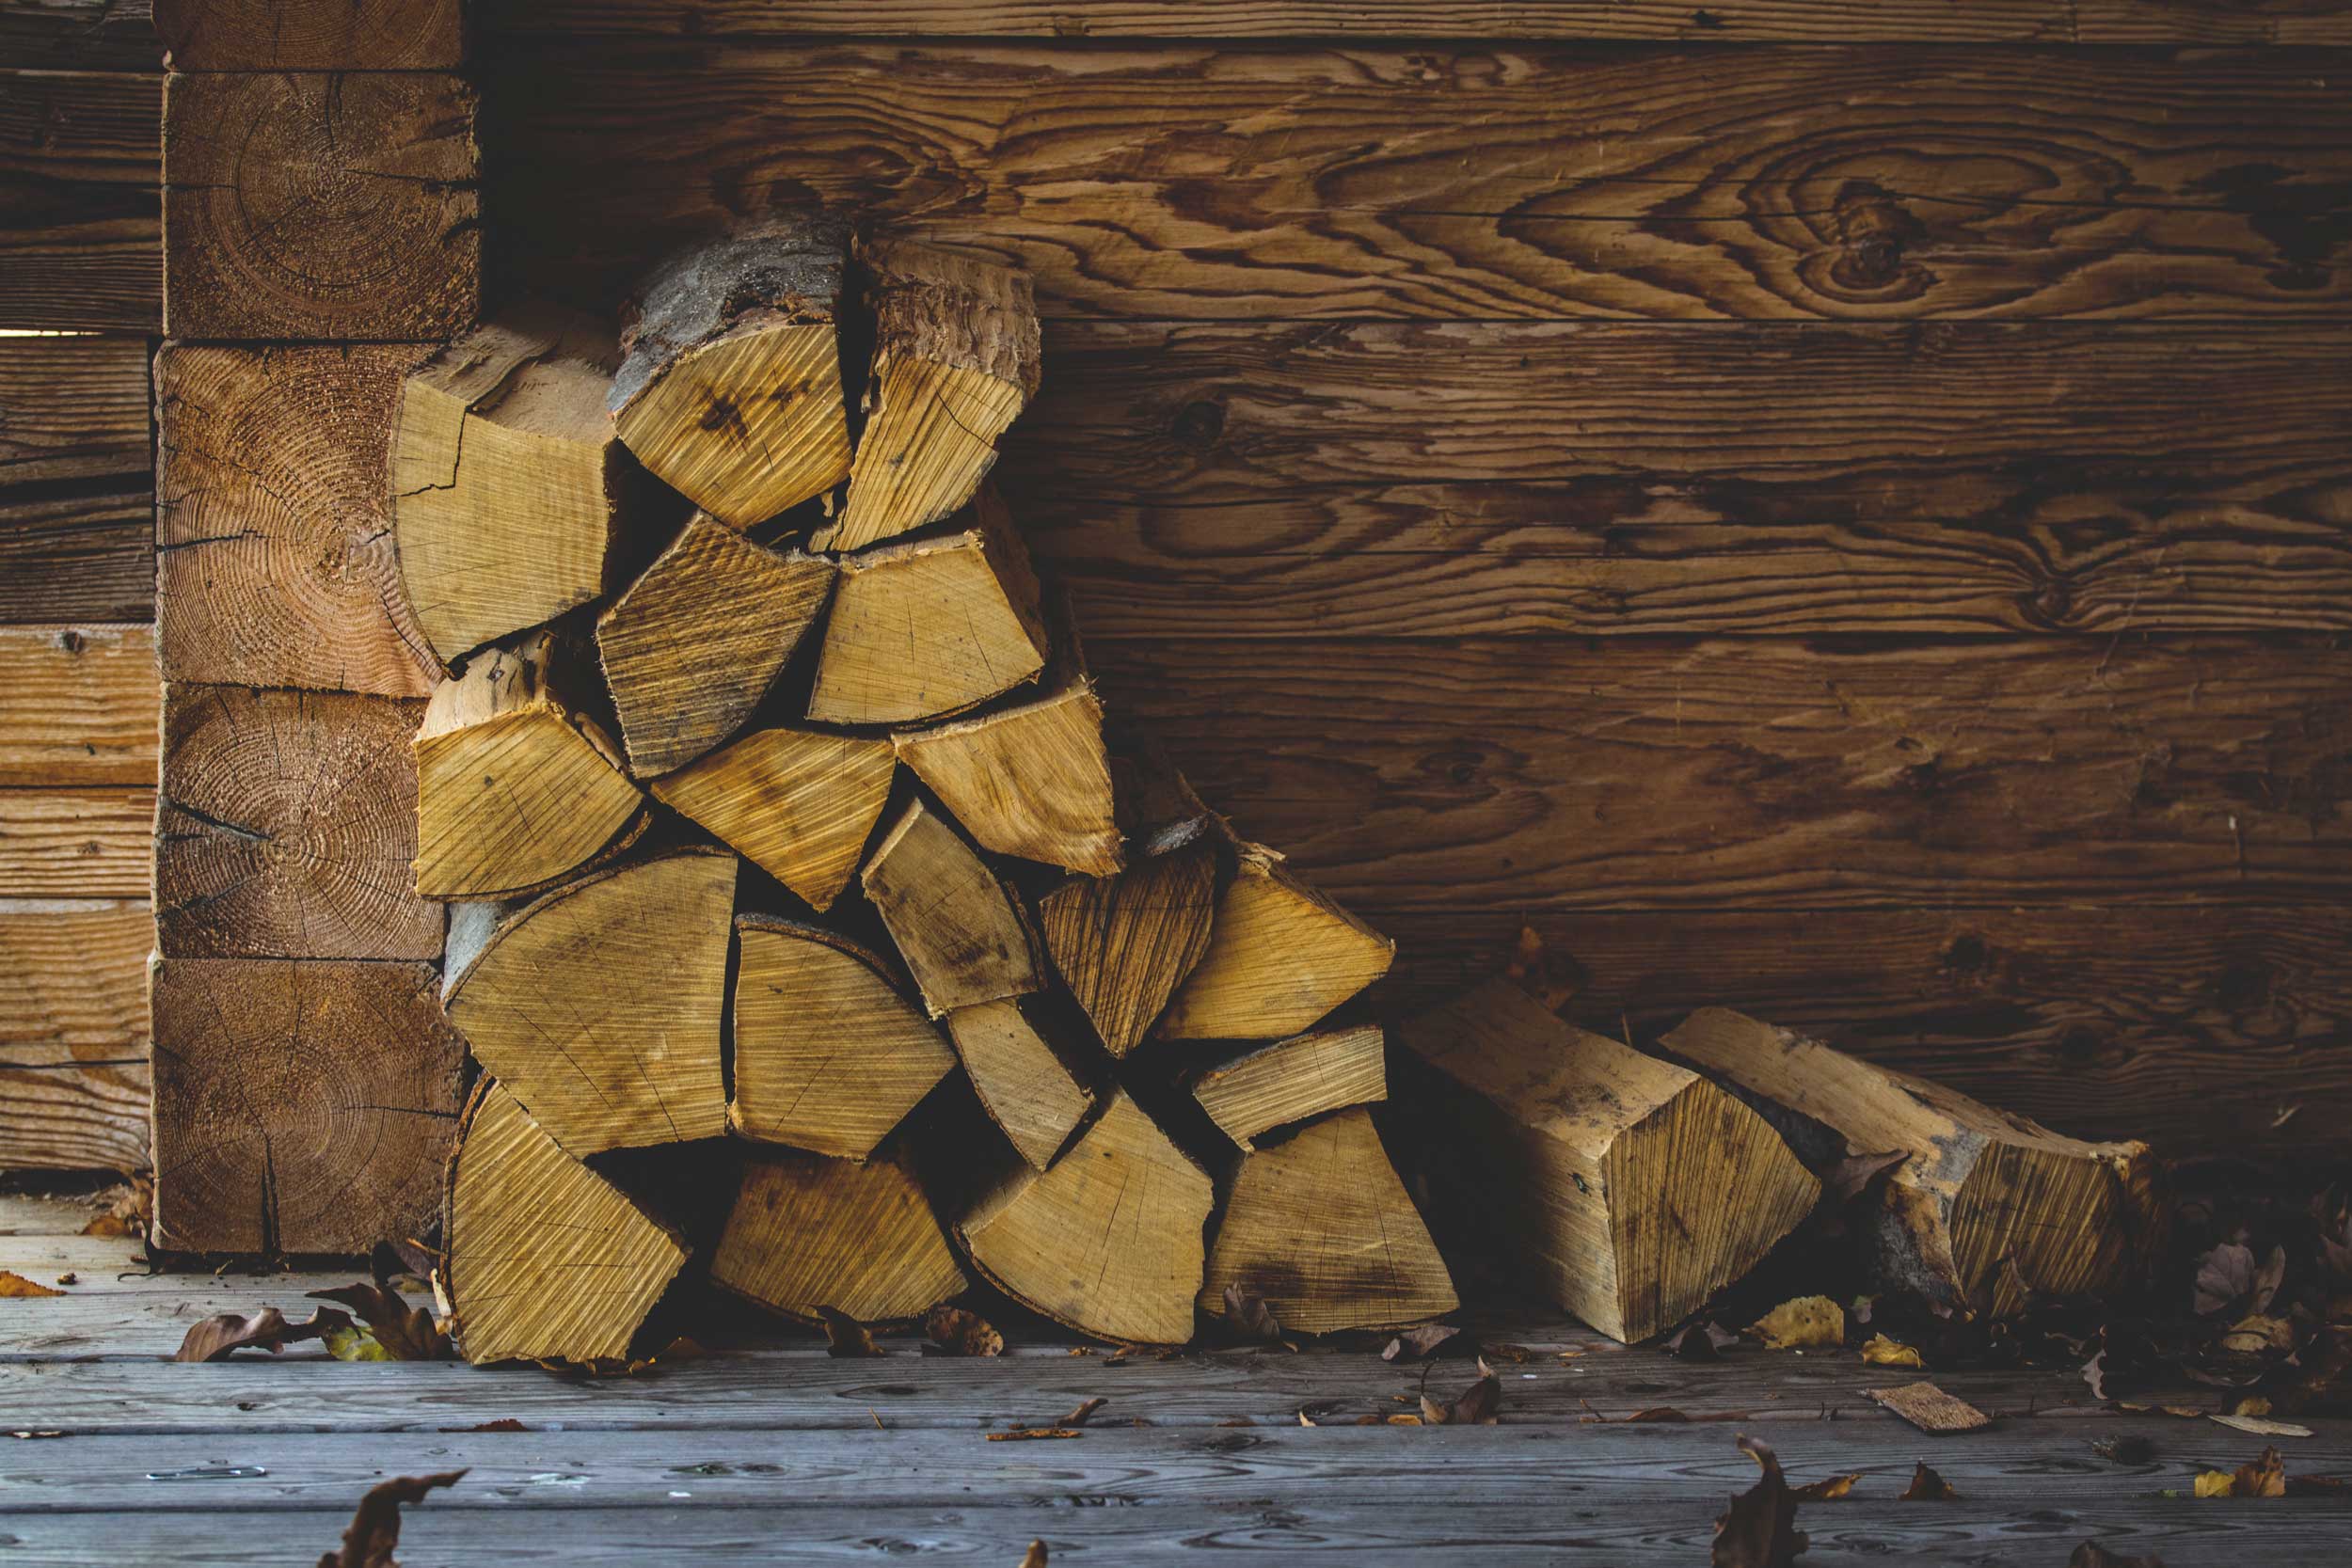 Comment stocker le bois de chauffage à l'extérieur ?